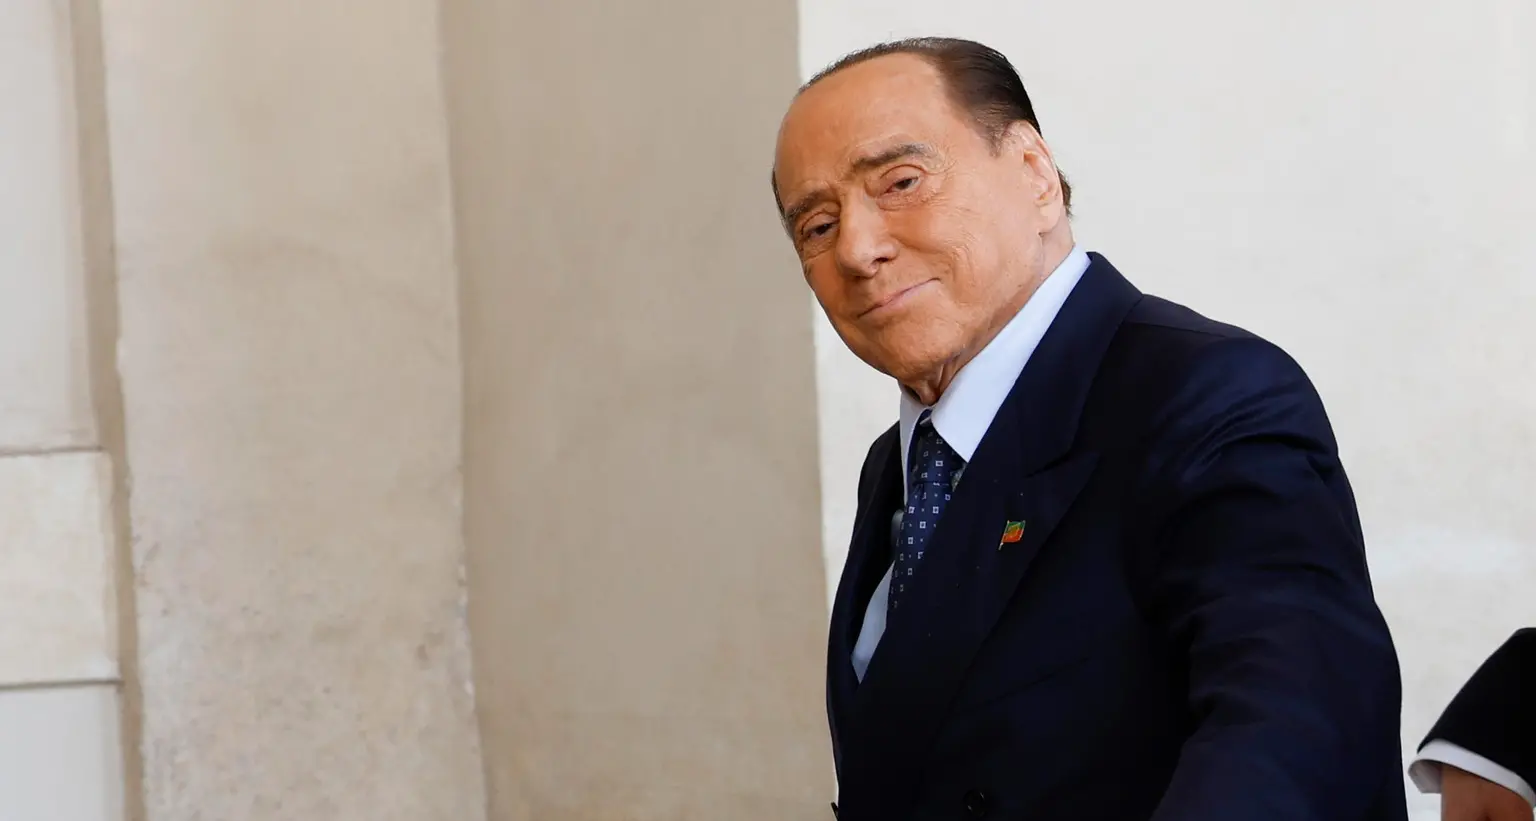 Addio a Berlusconi, idee distanti ma è il momento del cordoglio